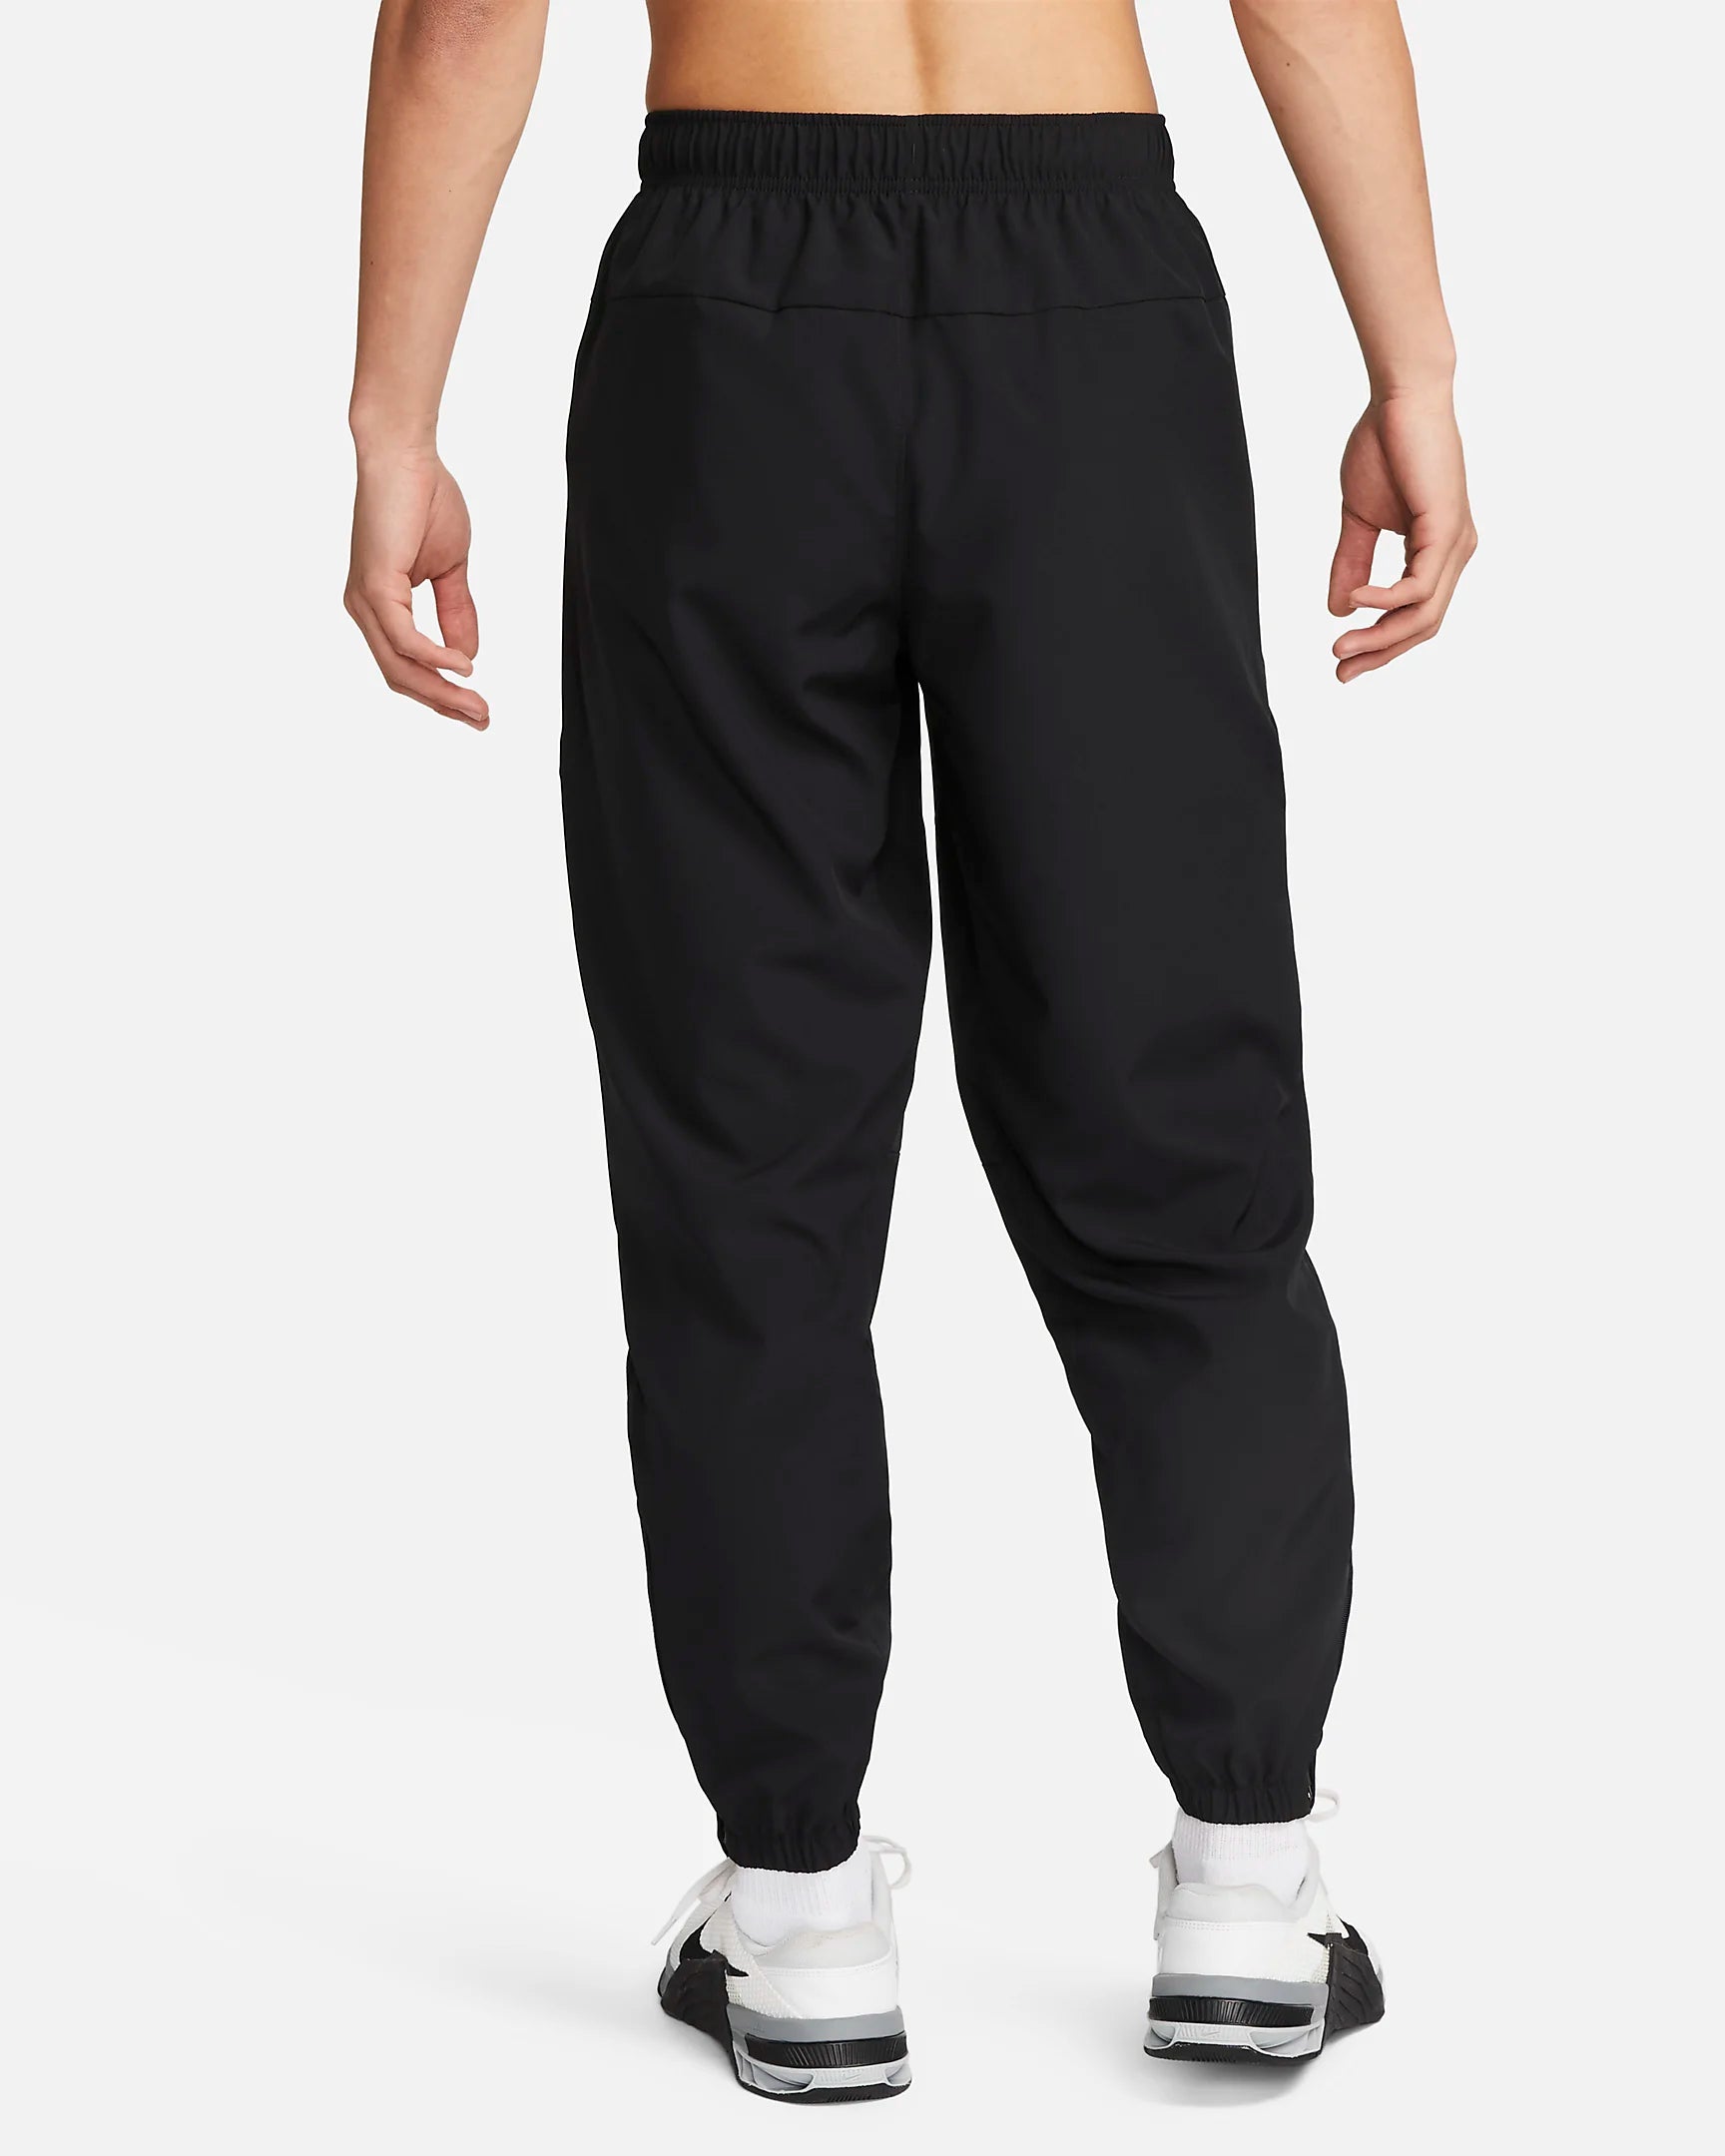 Pantaloni Nike Form - neri